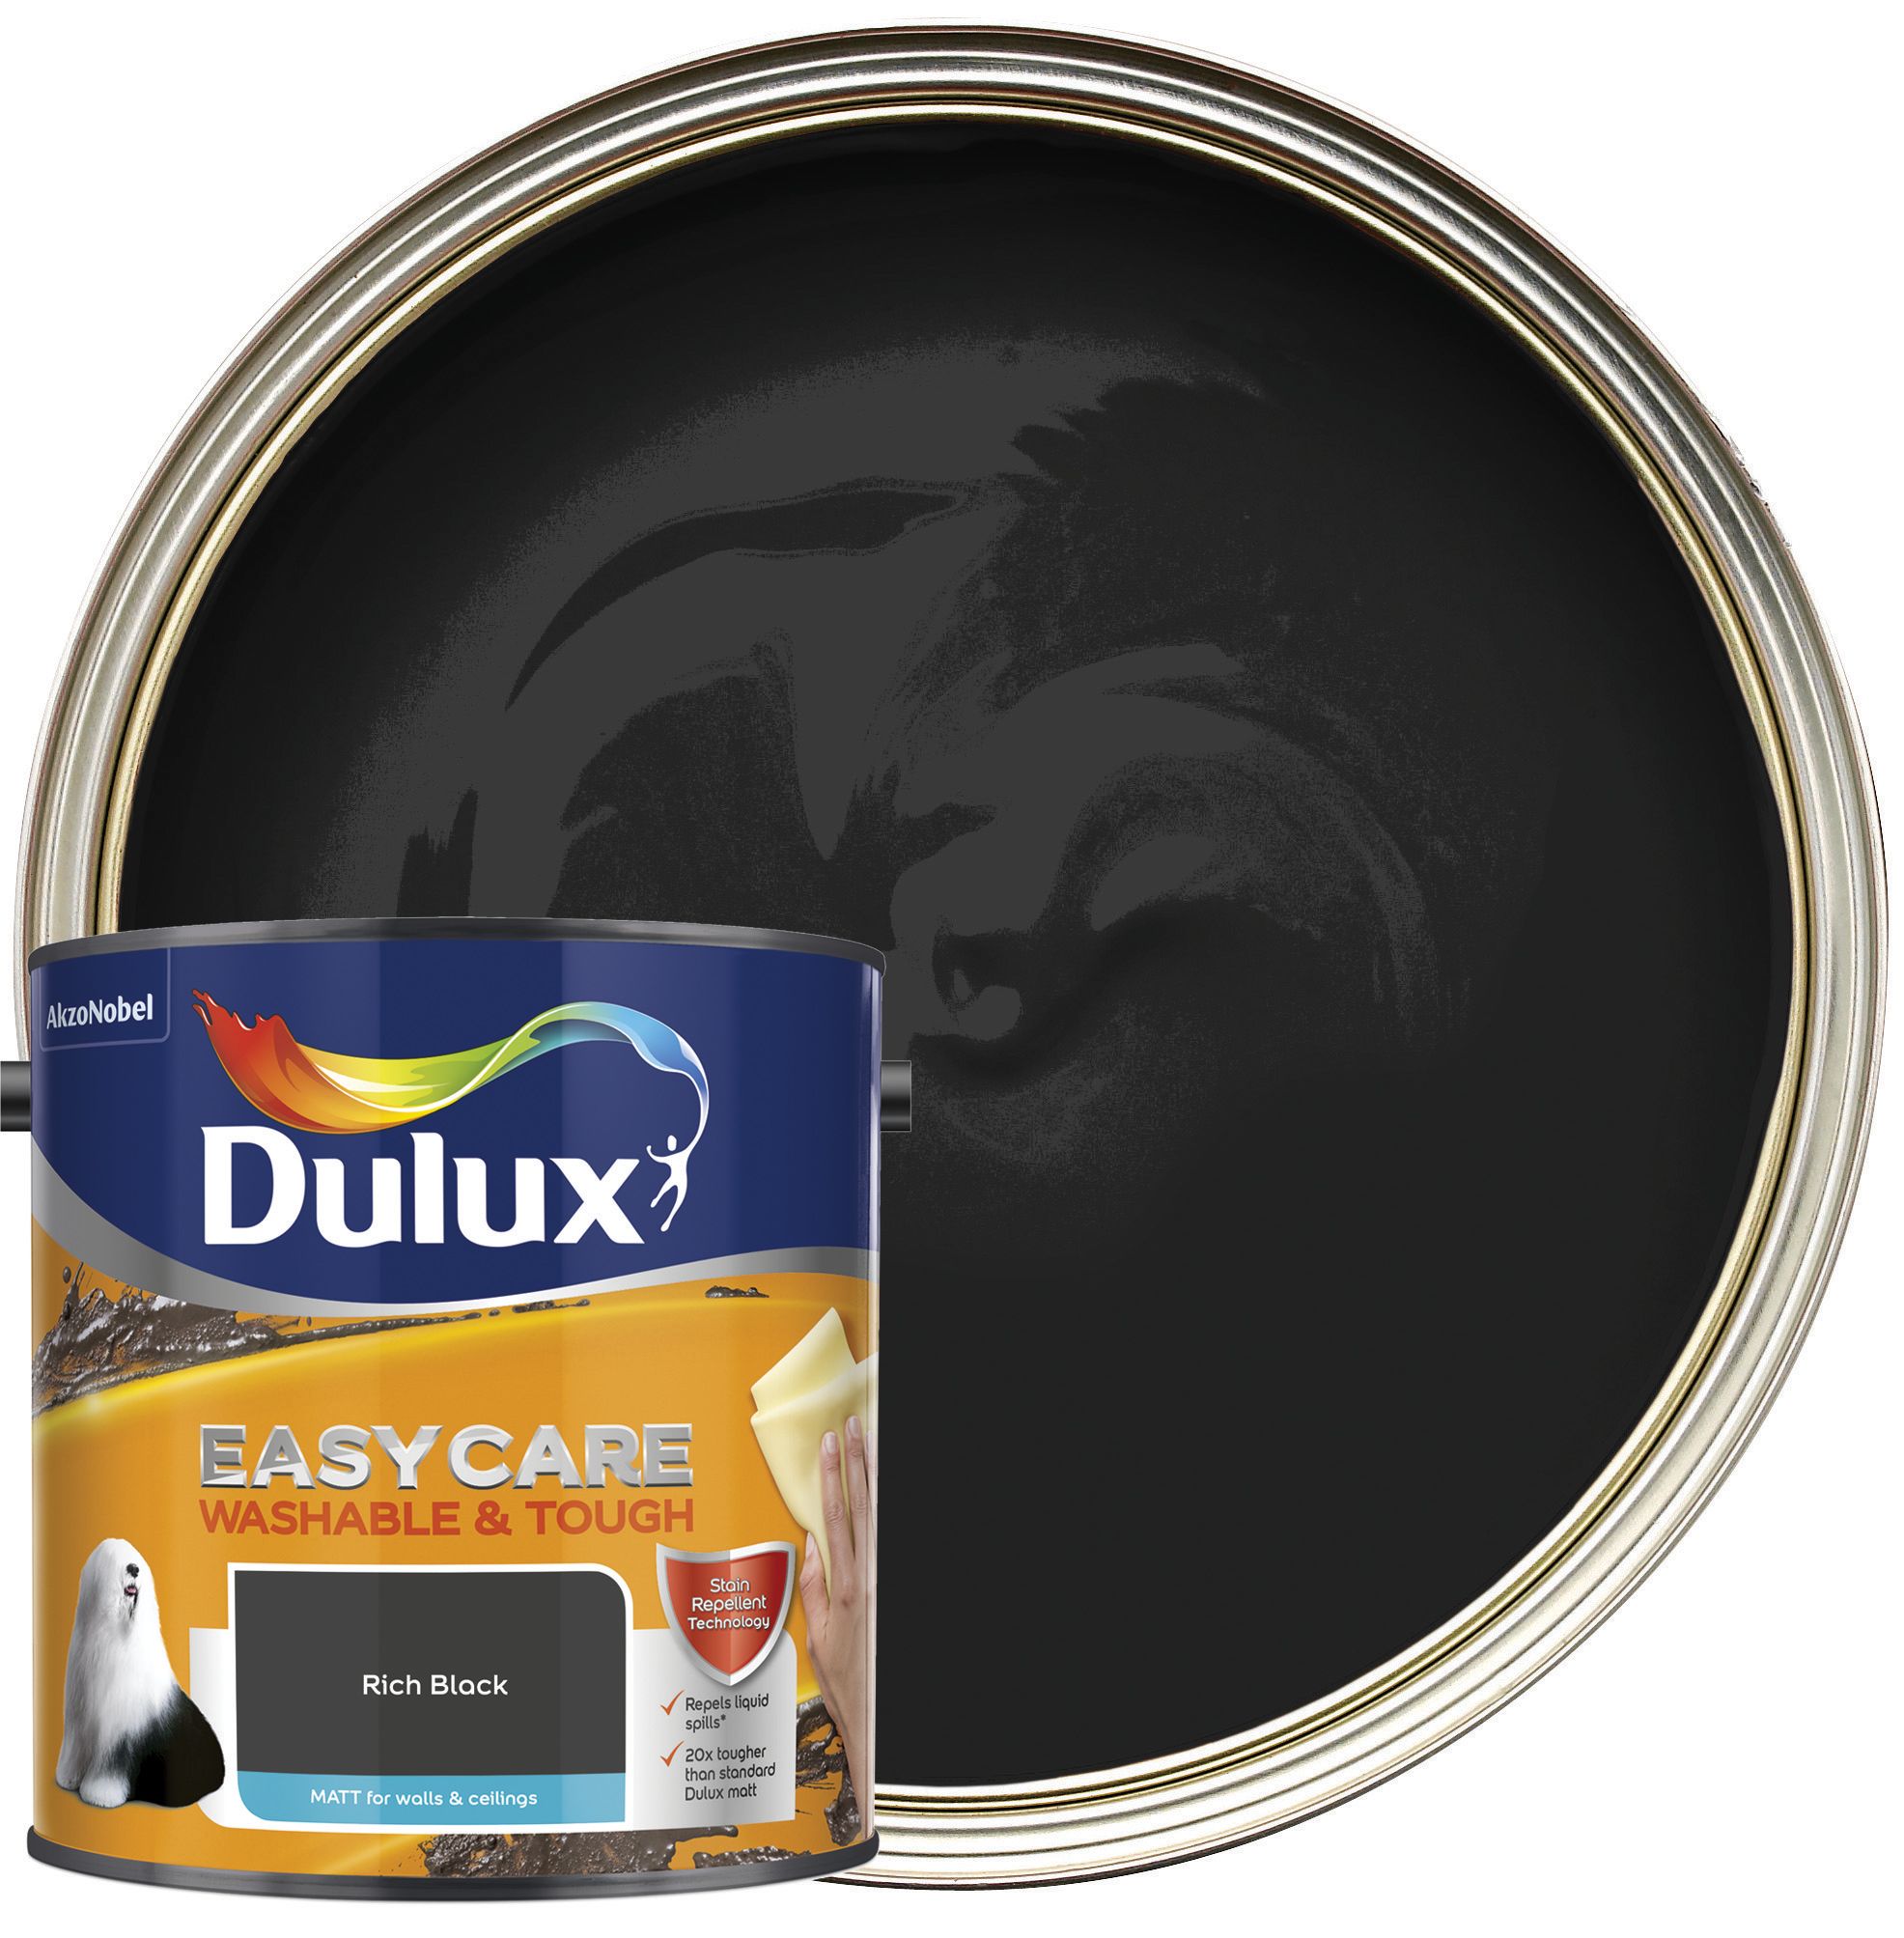 Dulux Easycare Washable & Tough Matt Emulsion Paint - Rich Black - 2.5L